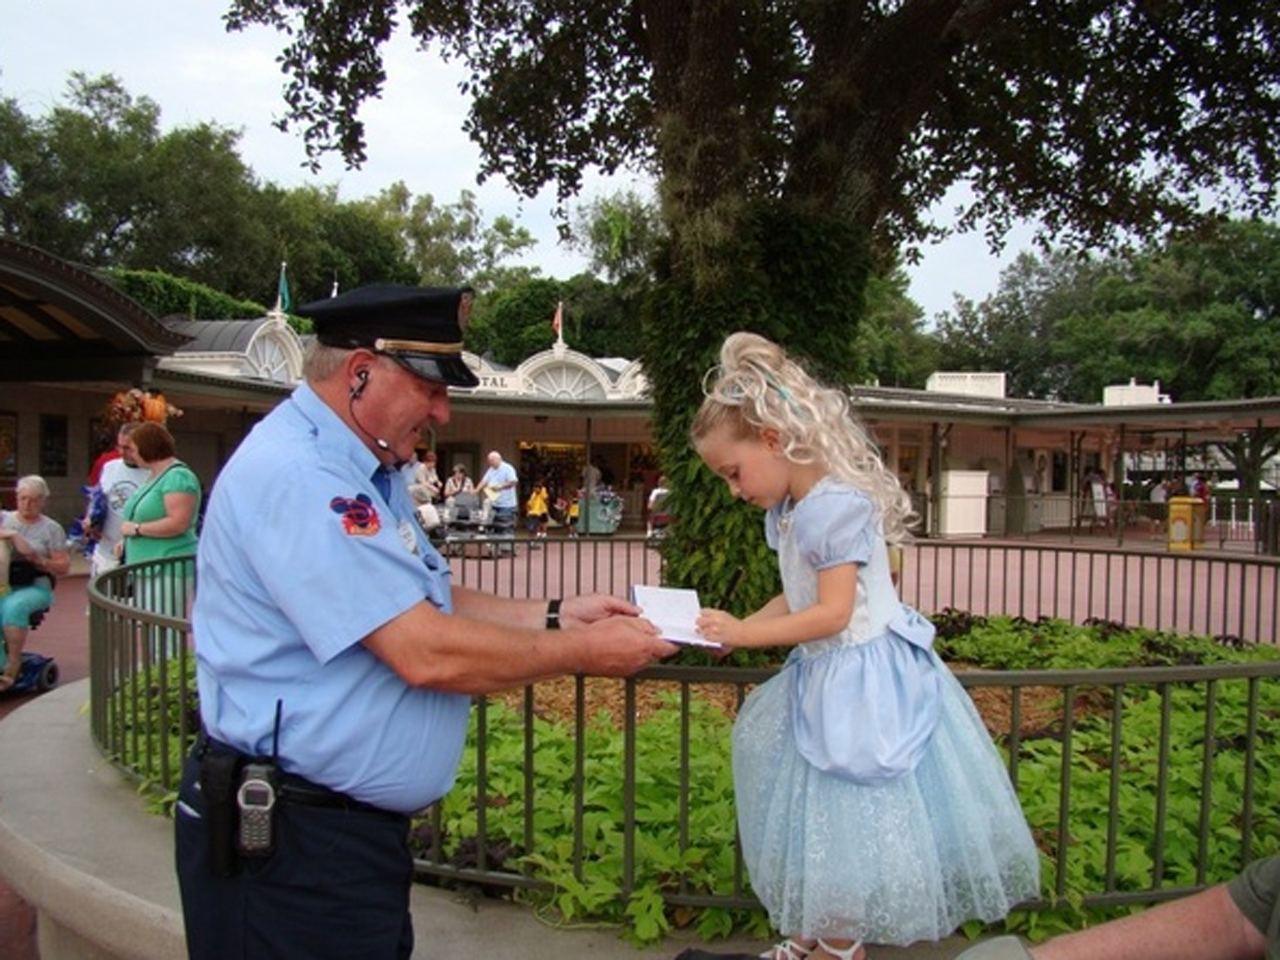 Quanto ganham os guardas de segurança da Disney World?